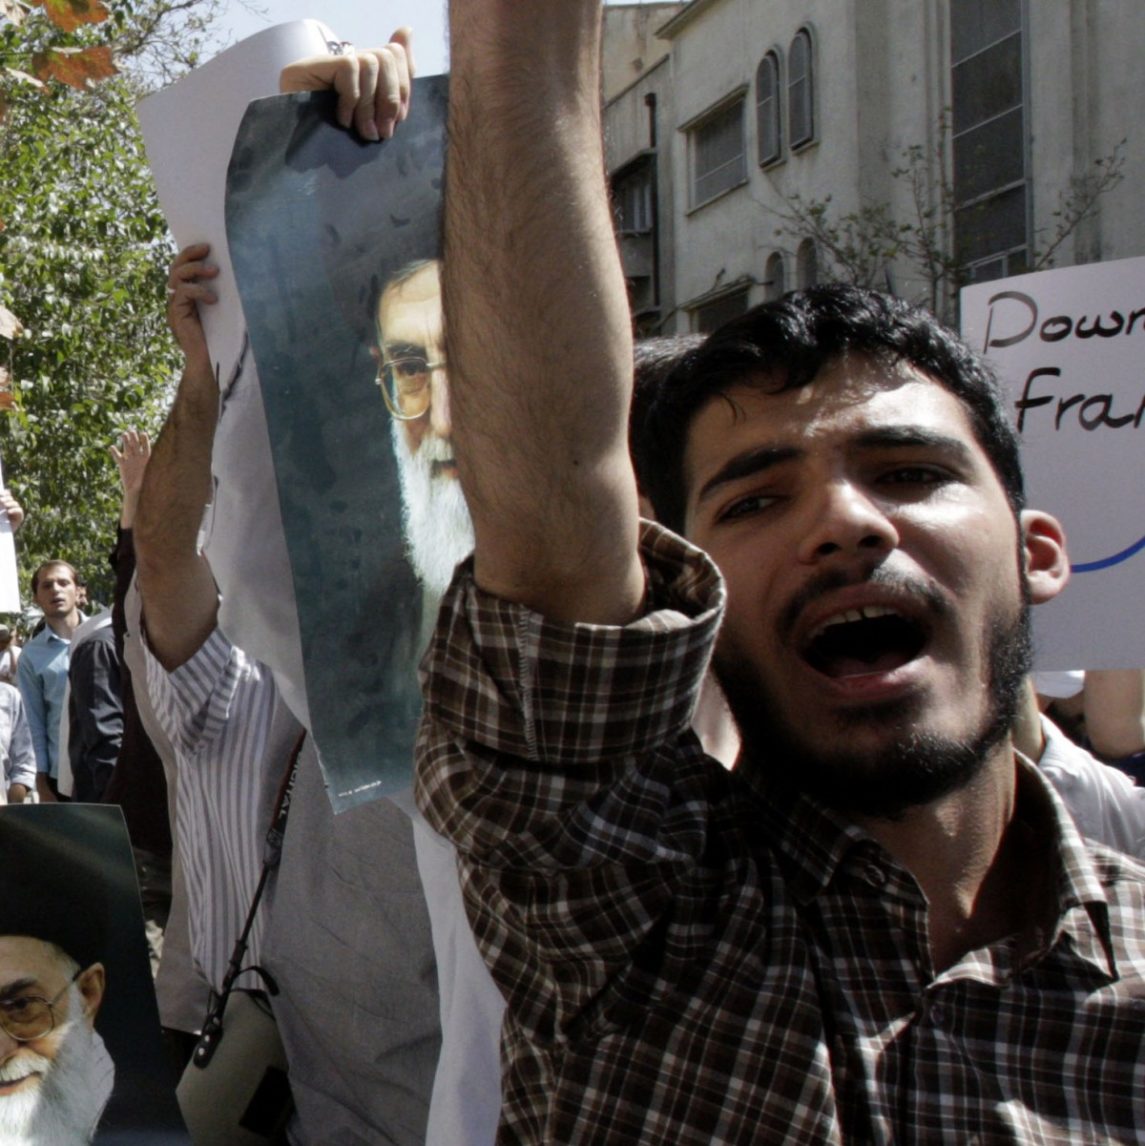 Despite Peaceful Protests, Media Focus On Violent Muslim Demonstrations